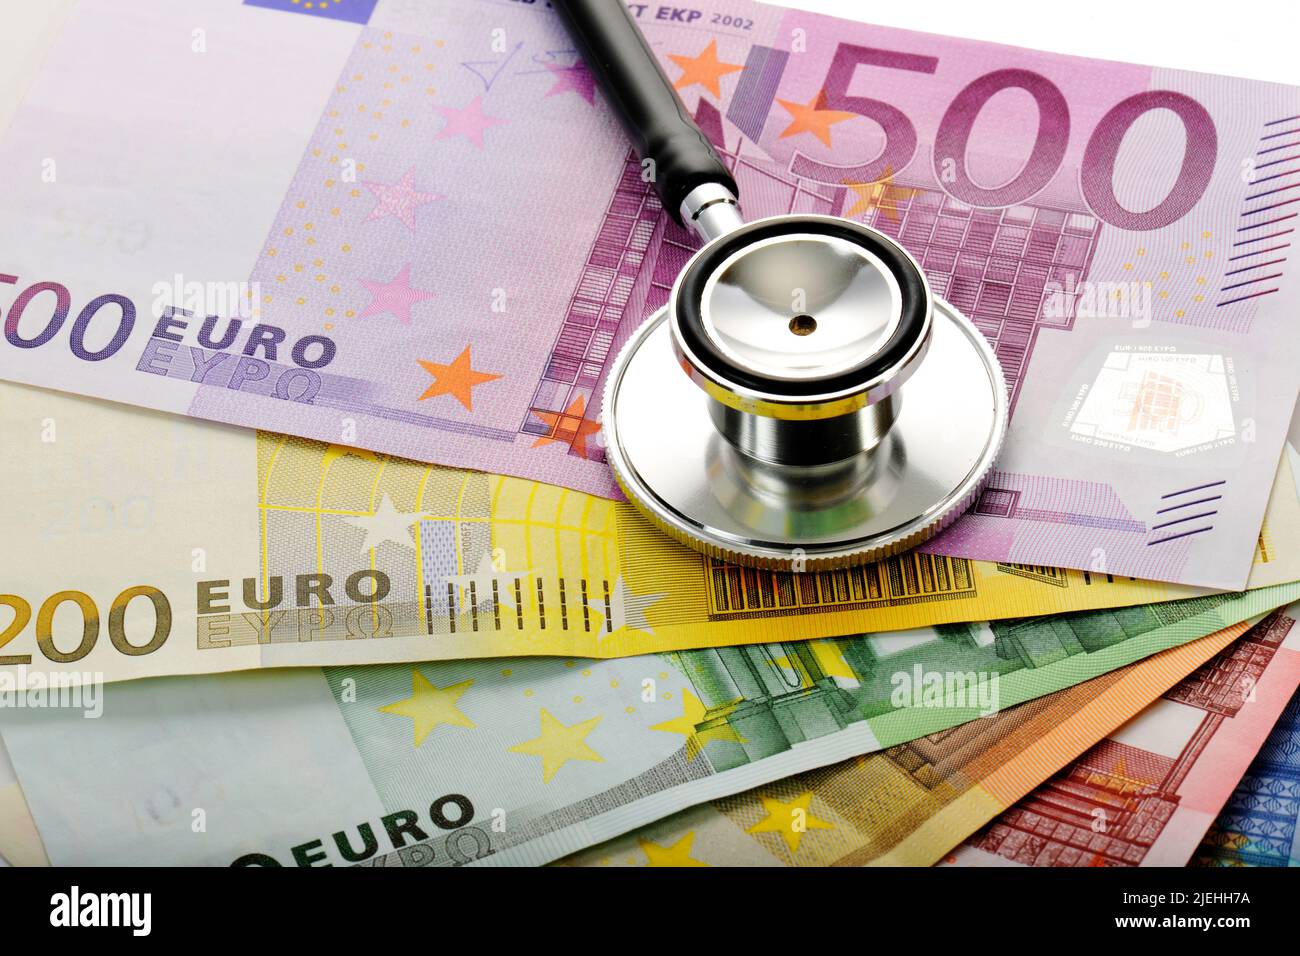 Stethoskop, EURO-Bannoden, Fächer, Symbolbild Kostenexplosion Gesundheitswesen, Arztkosten Foto Stock